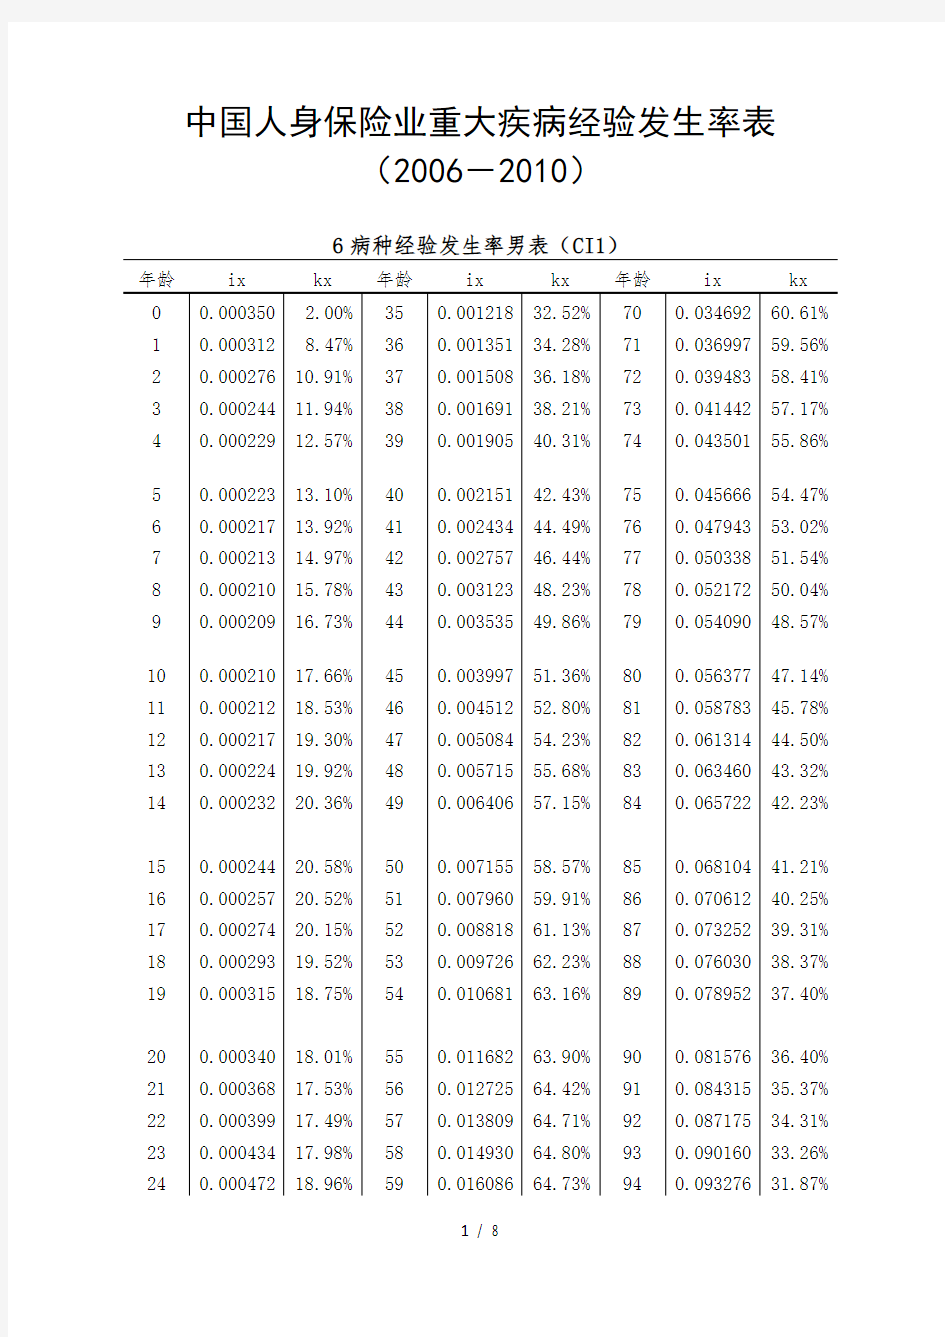 中国人身保险业重大疾病经验发生率表(2006-2010)